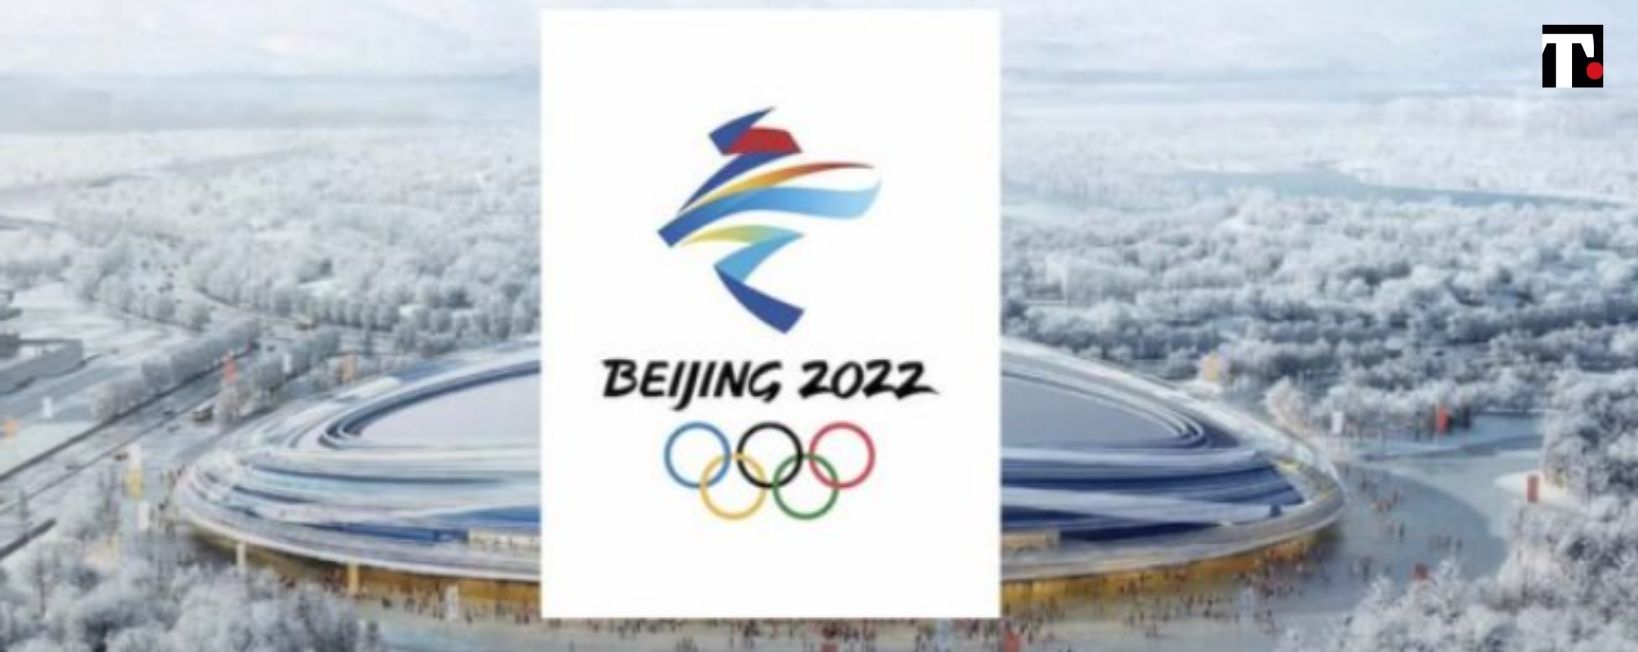 Olimpiadi invernali 2022, dove vederle